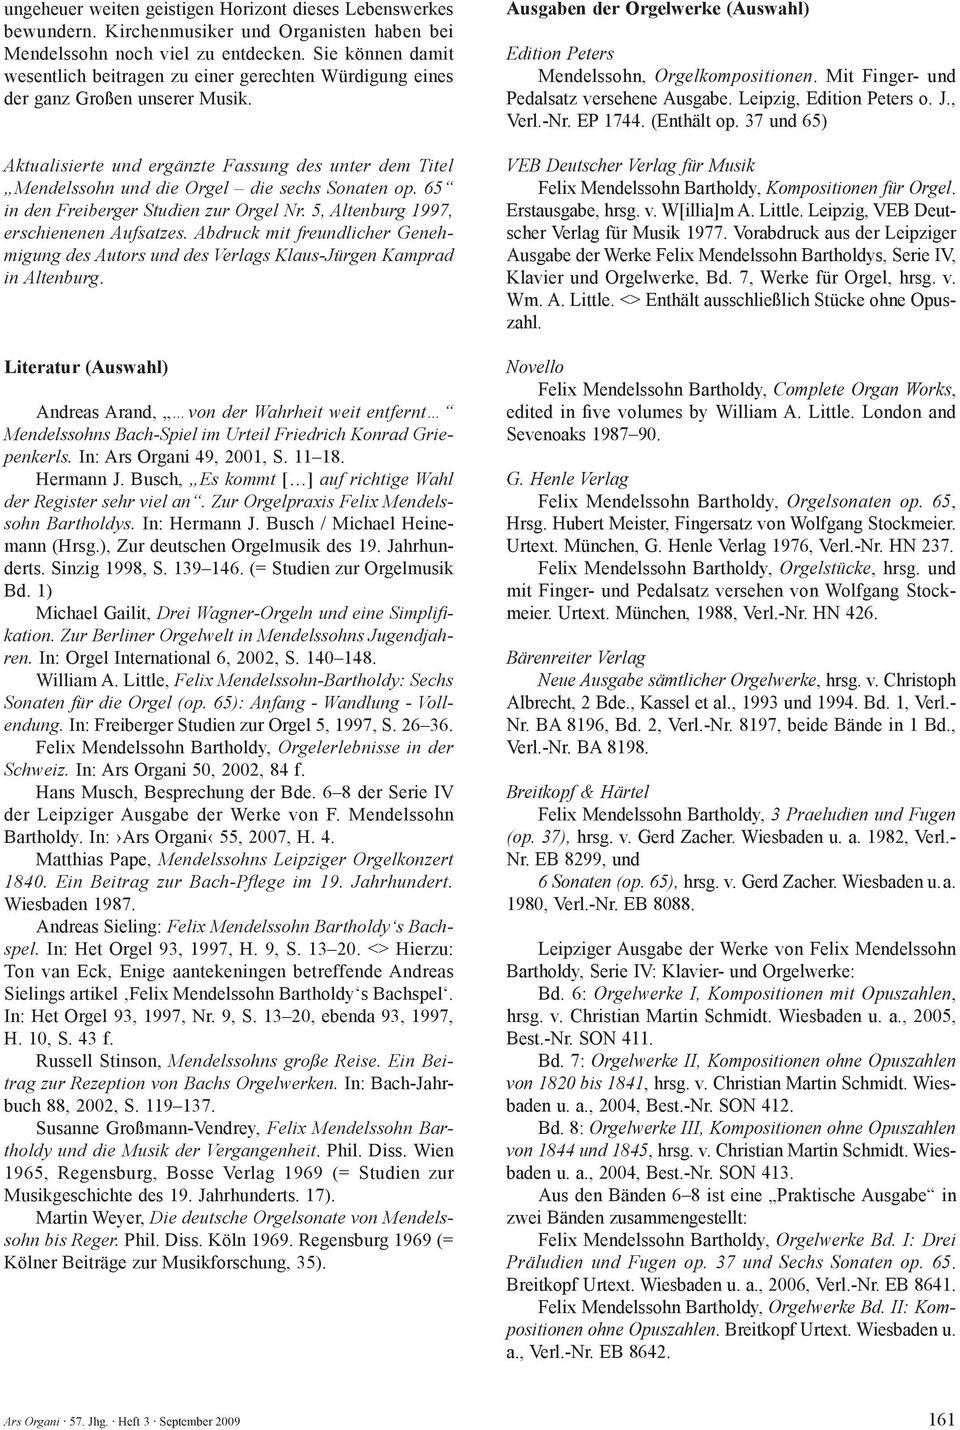 Aktualisierte und ergänzte Fassung des unter dem Titel Mendelssohn und die Orgel die sechs Sonaten op. 65 in den Freiberger Studien zur Orgel Nr. 5, Altenburg 1997, erschienenen Aufsatzes.